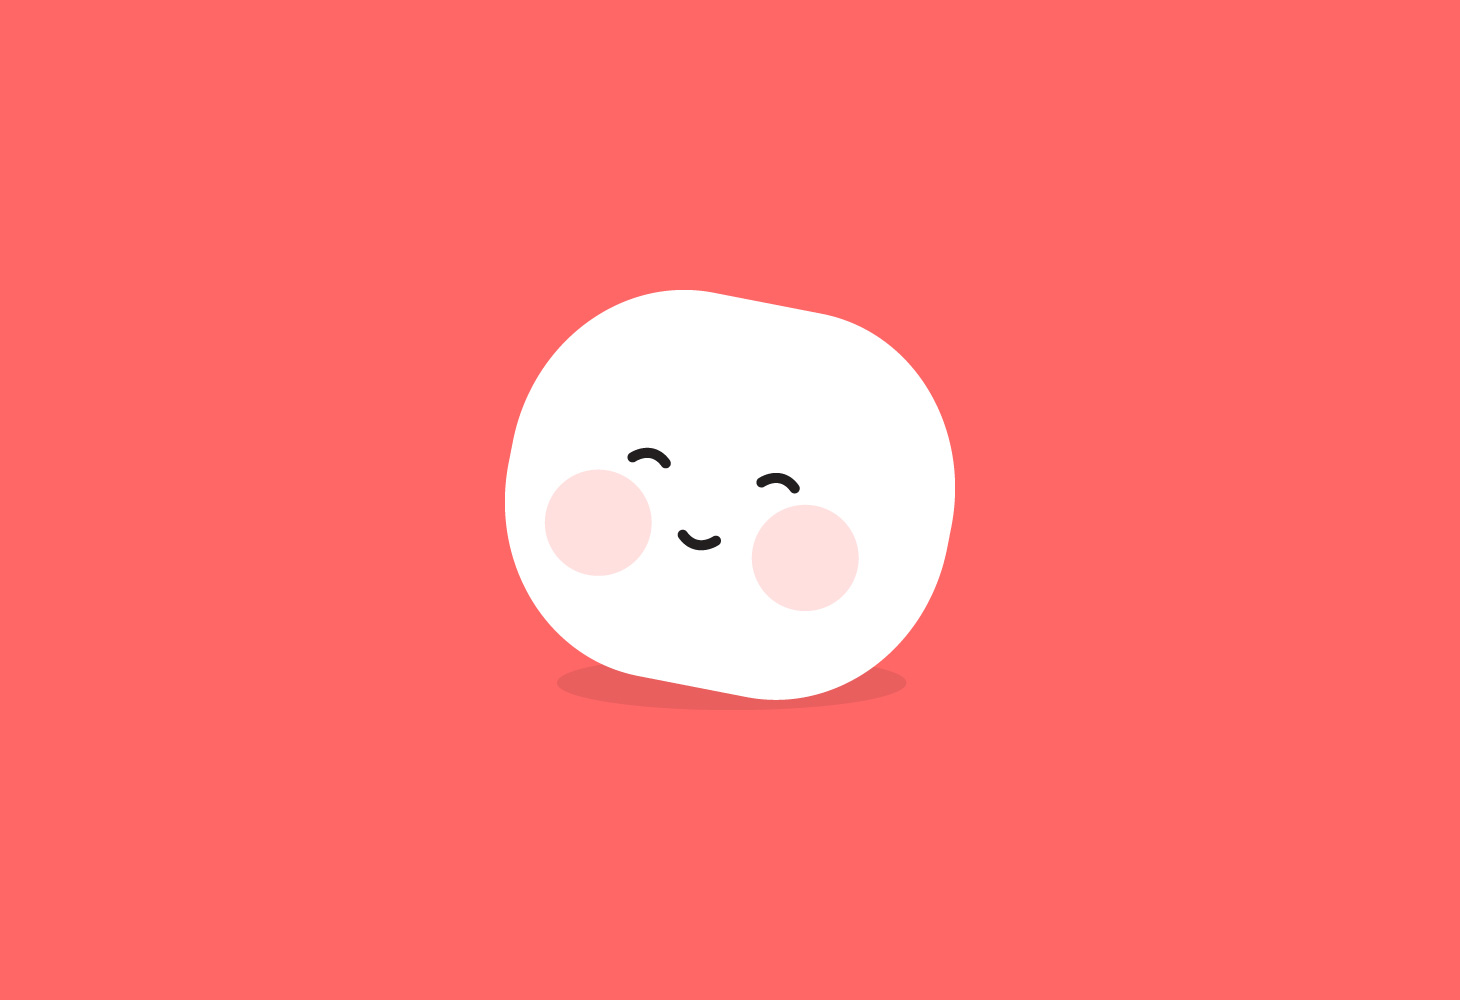 Marshmallow - Character - Joyful